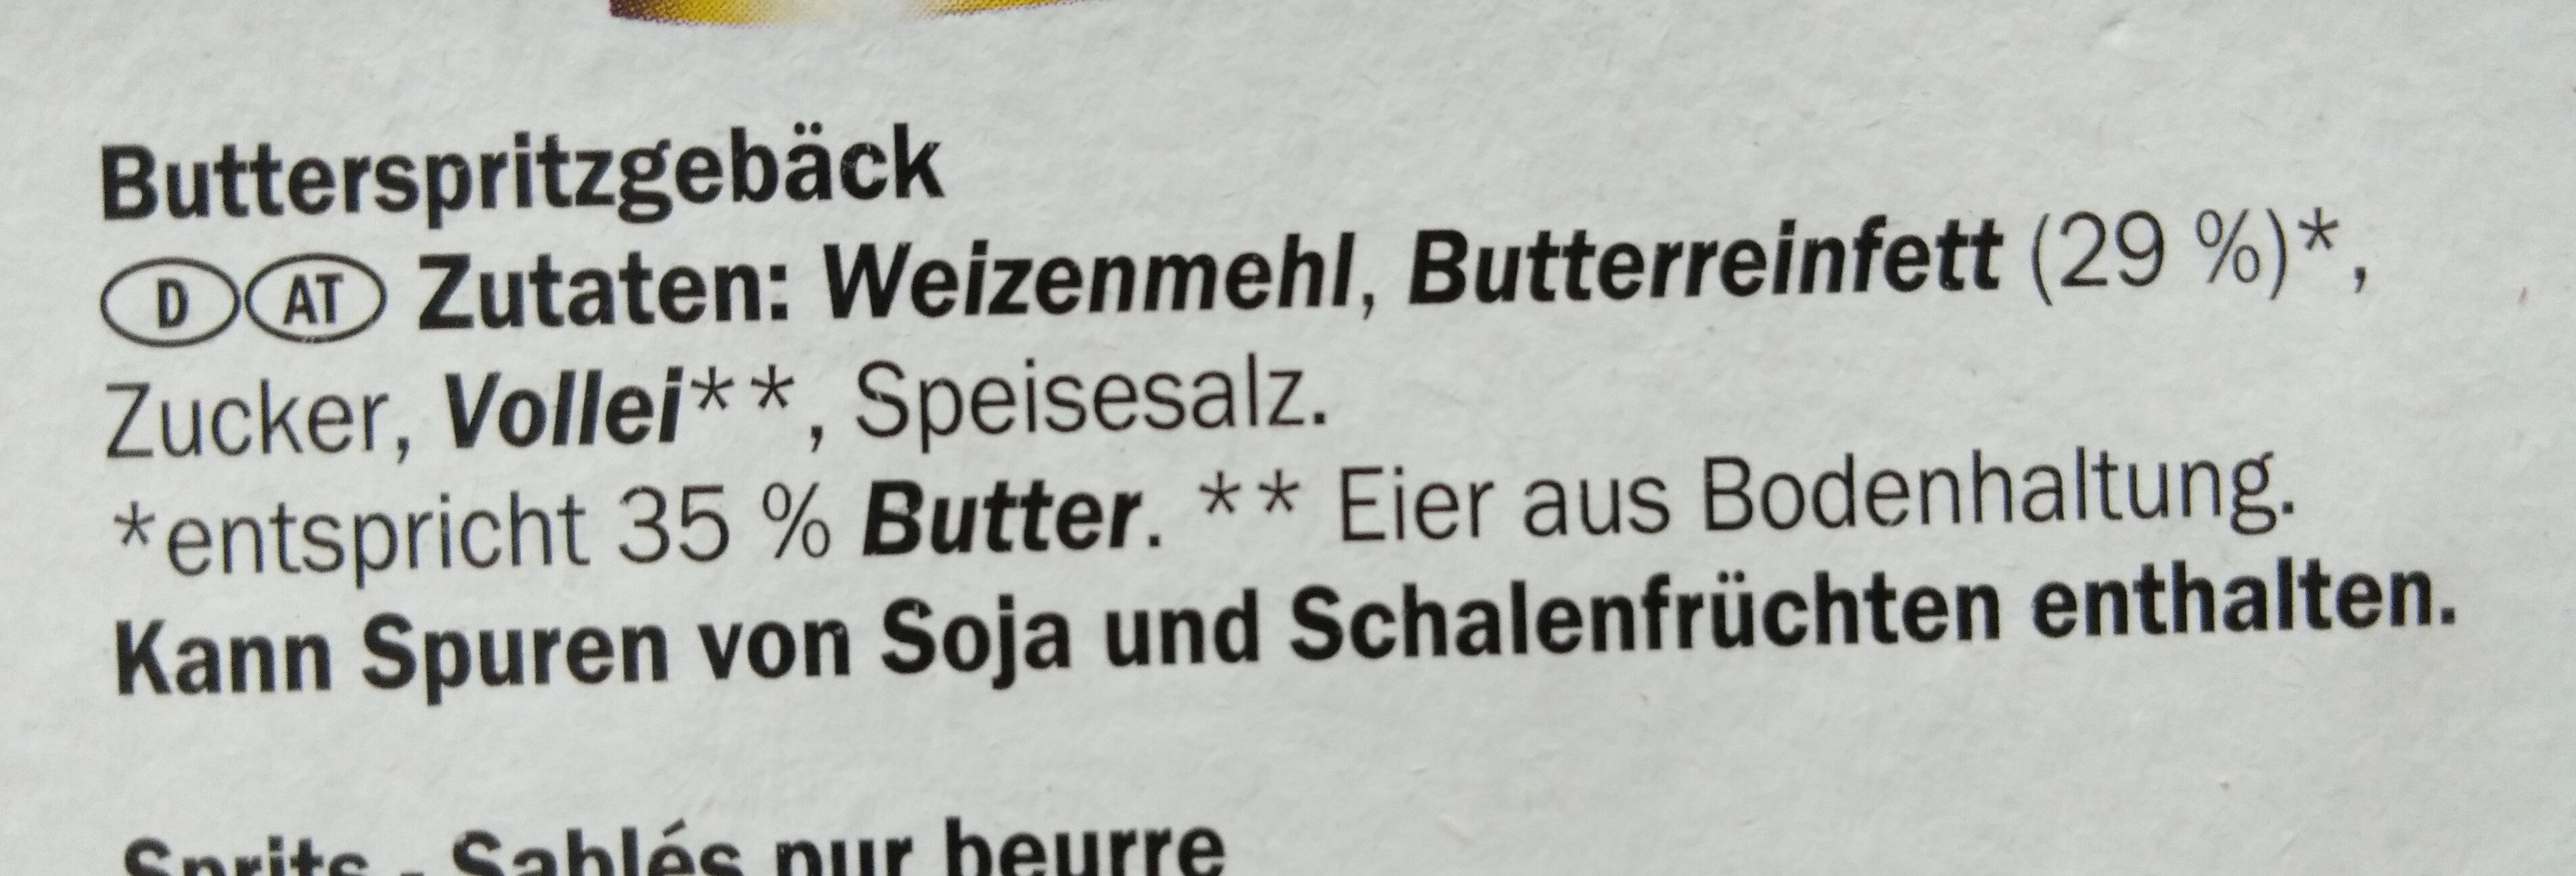 Butter Spritzgebäck - Zutaten